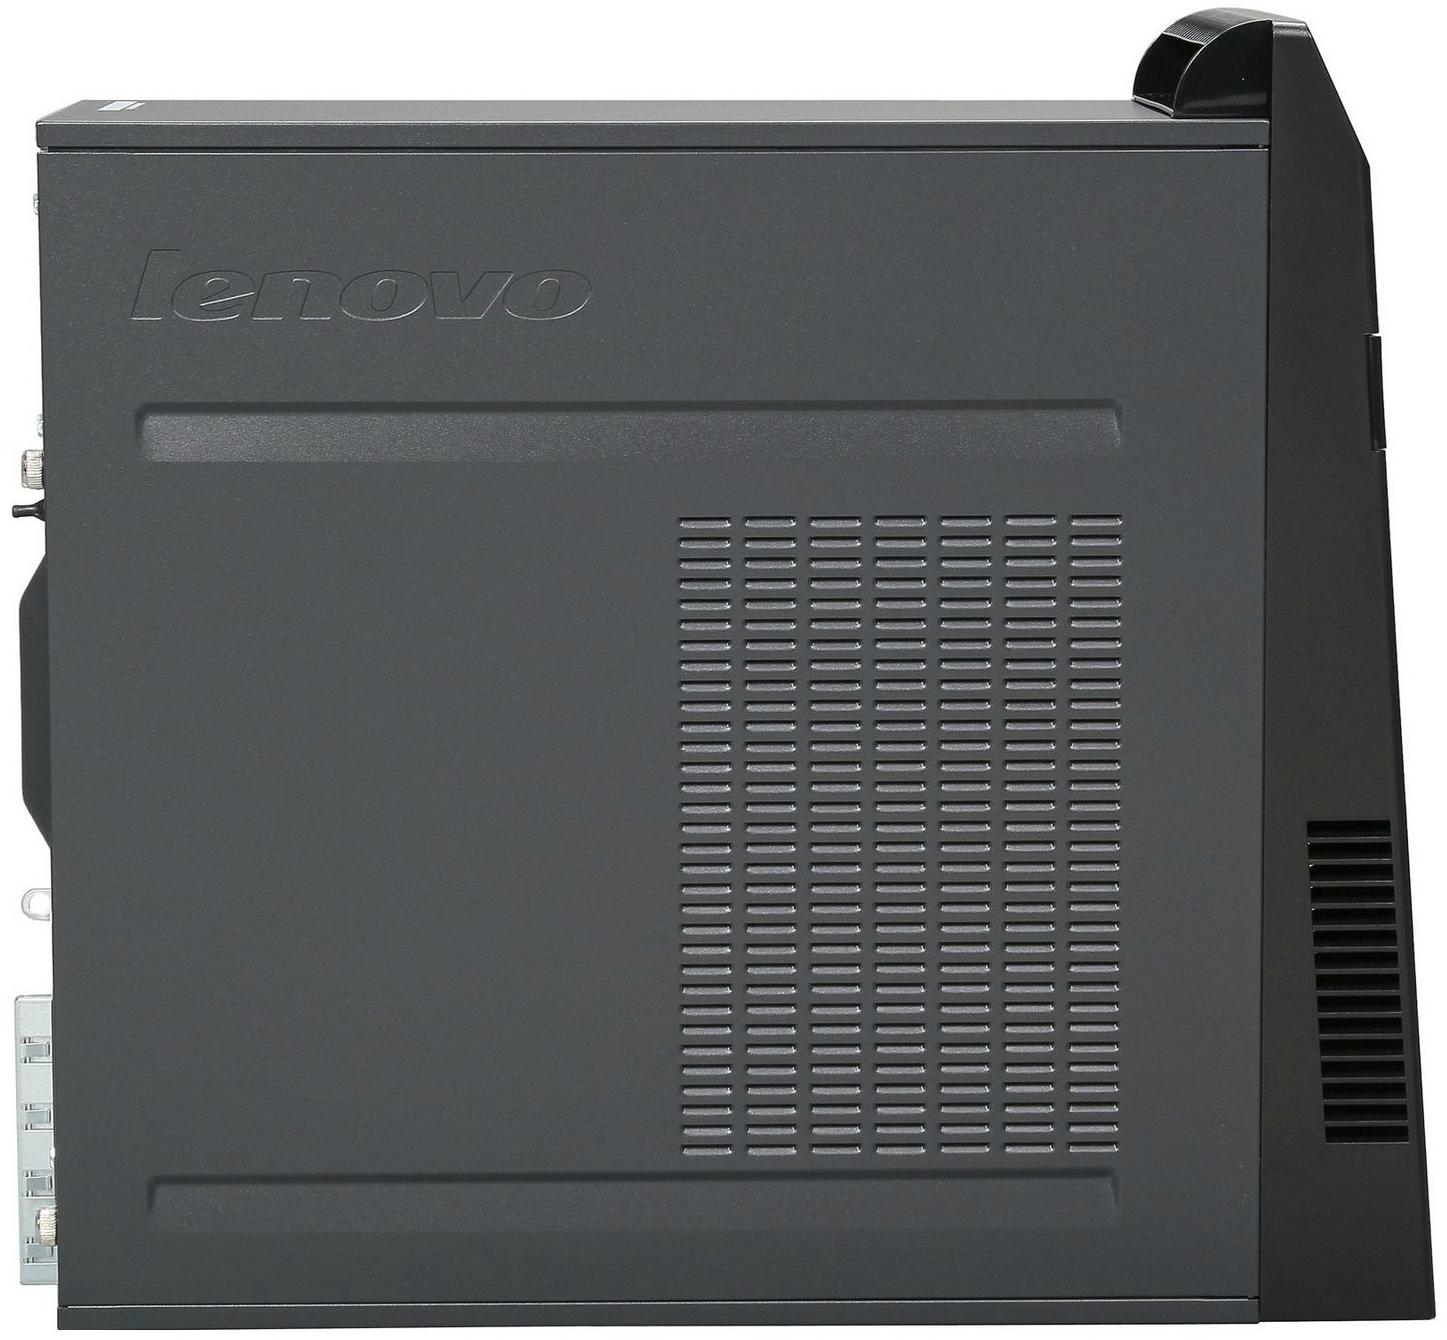   Lenovo ThinkCentre M72e MT (3597CN2)  3